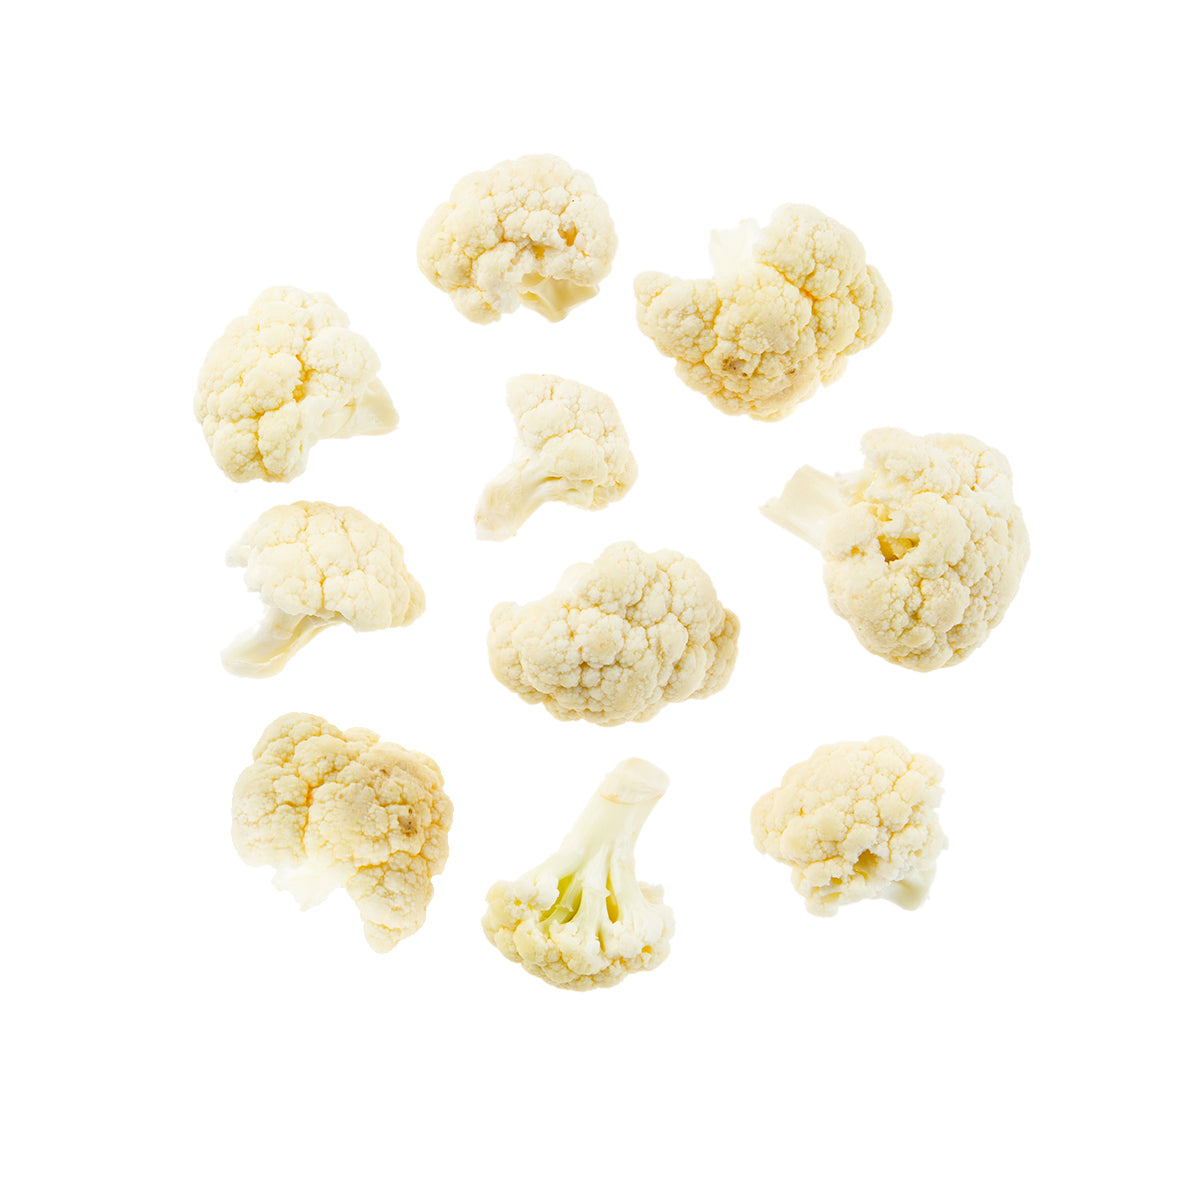 BoxNCase Cauliflower Florets